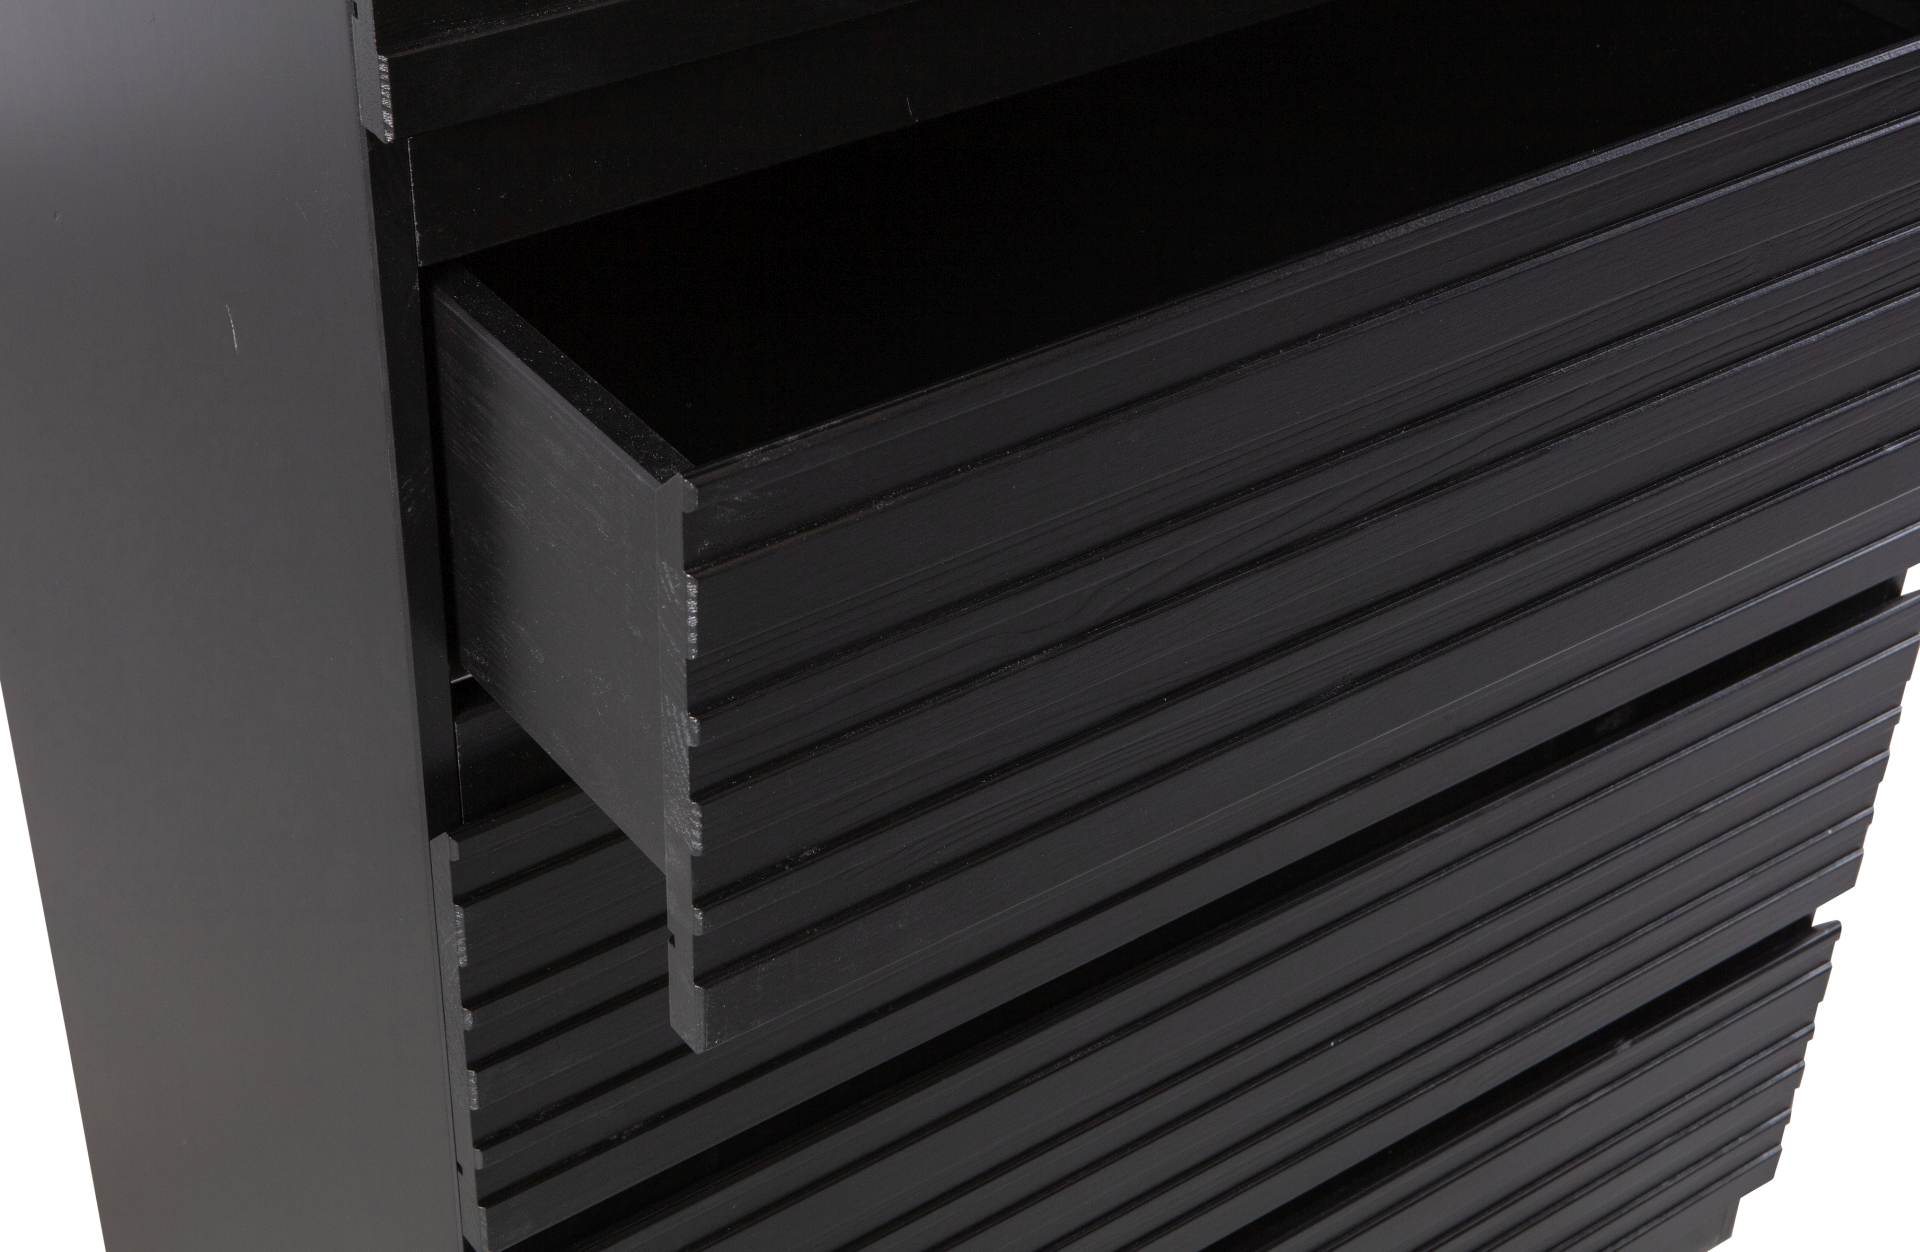 Die Kommode Jente wurde aus Kiefernholz hergestellt, welches einen schwarzen Farbton besitzt. Die Kommode ist in zwei Varianten verfügbar, diese hat 5 Schubladen.